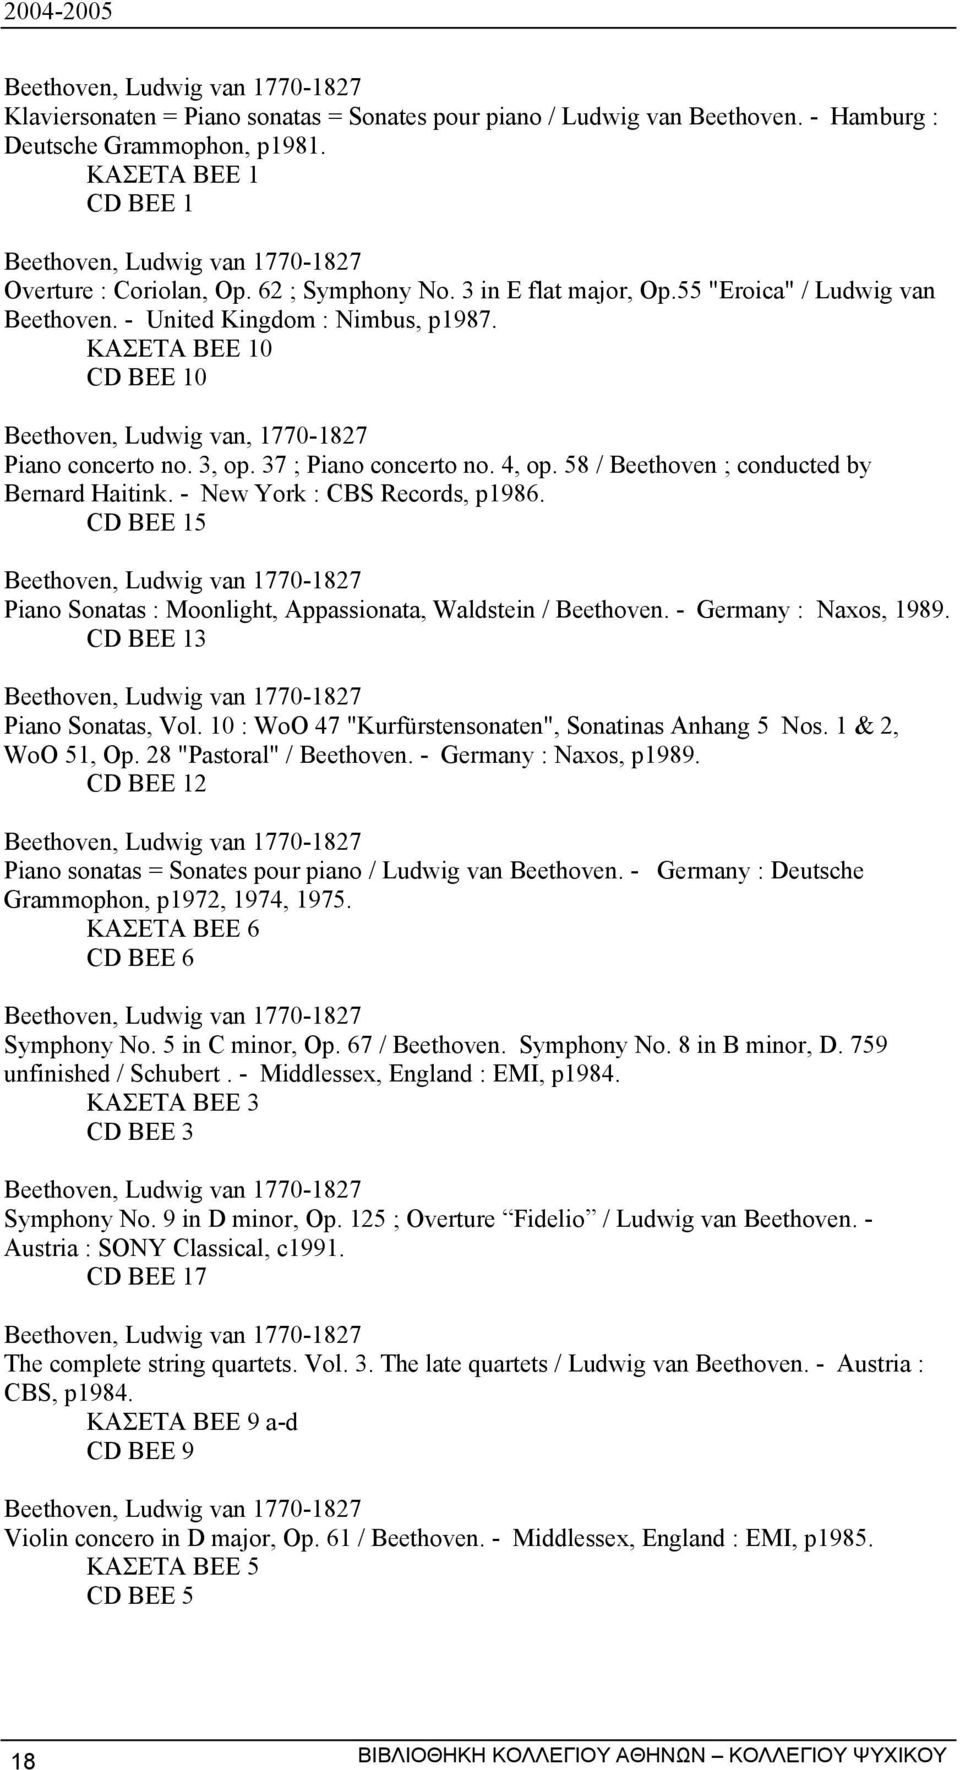 ΚΑΣΕΤΑ BEE 10 CD BEE 10 Beethoven, Ludwig van, 1770-1827 Piano concerto no. 3, op. 37 ; Piano concerto no. 4, op. 58 / Beethoven ; conducted by Bernard Haitink. - New York : CBS Records, p1986.